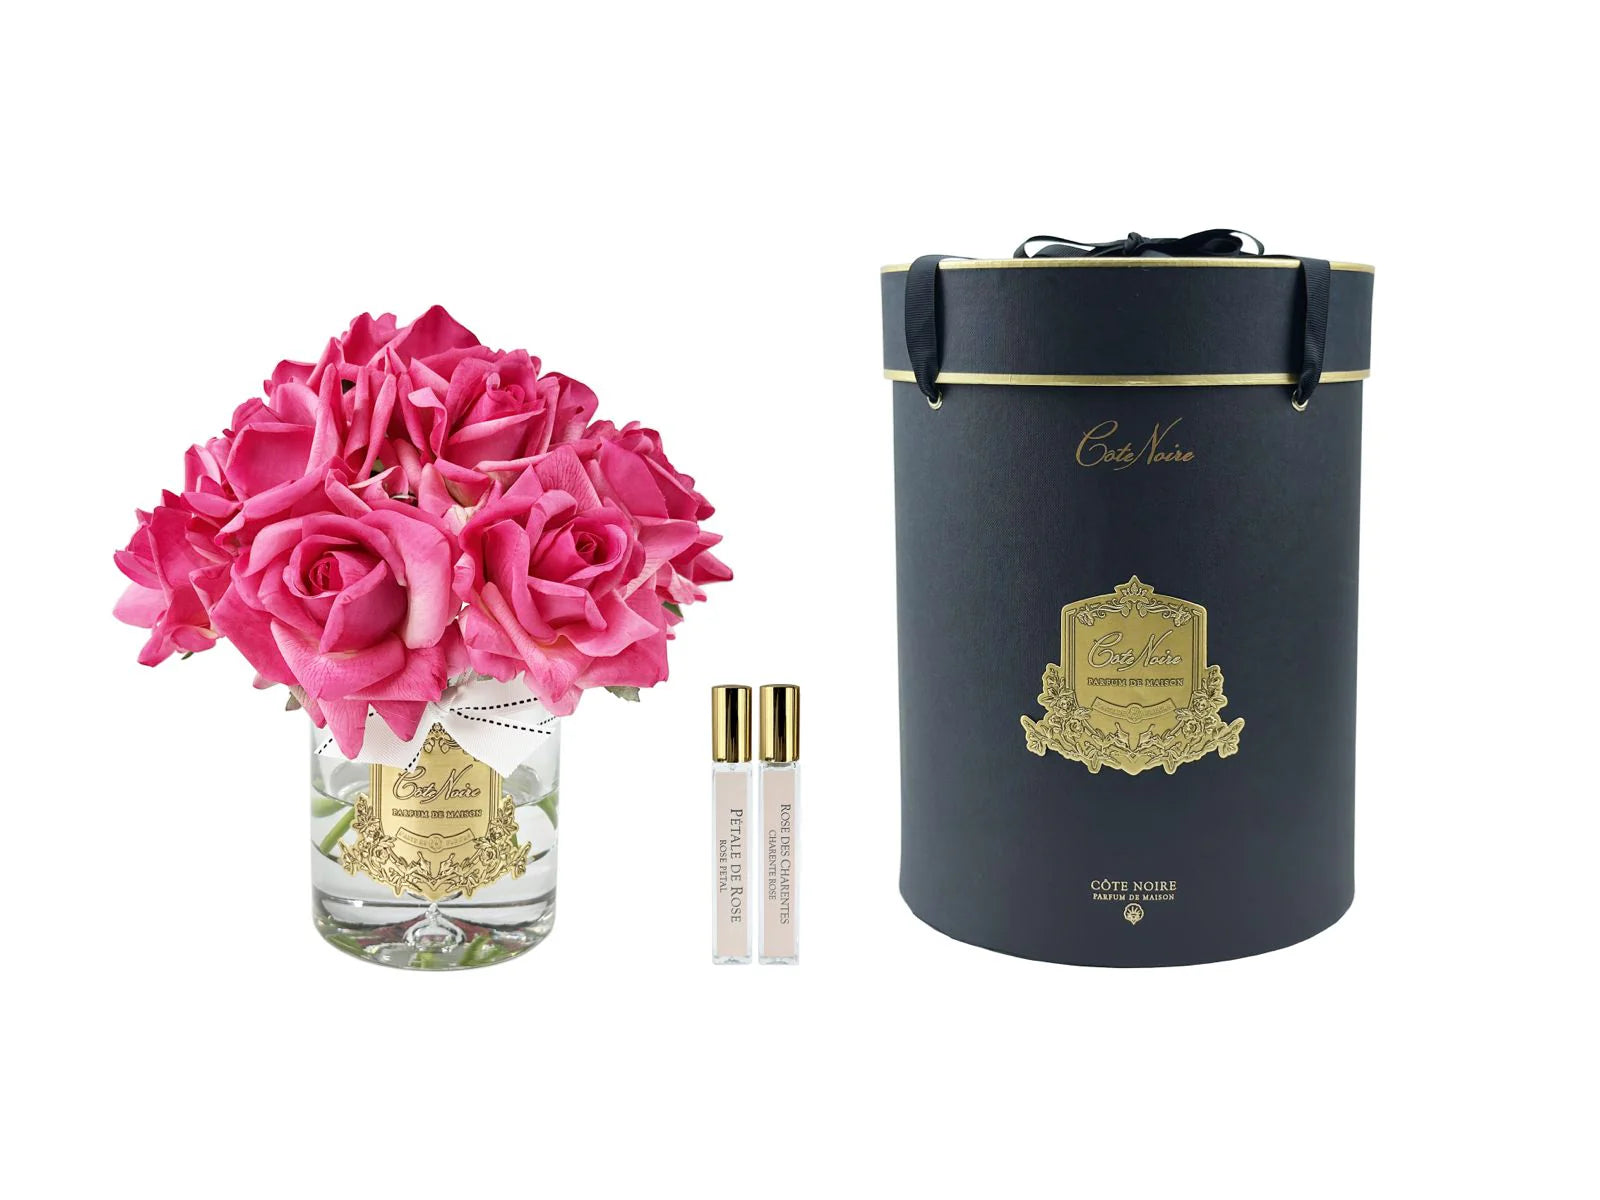 13  magentafartbene rosen arrangiert in einer edlen glasvase, zwei parfumsprays und eine luxurioese runde geschenkbox in schwarz.